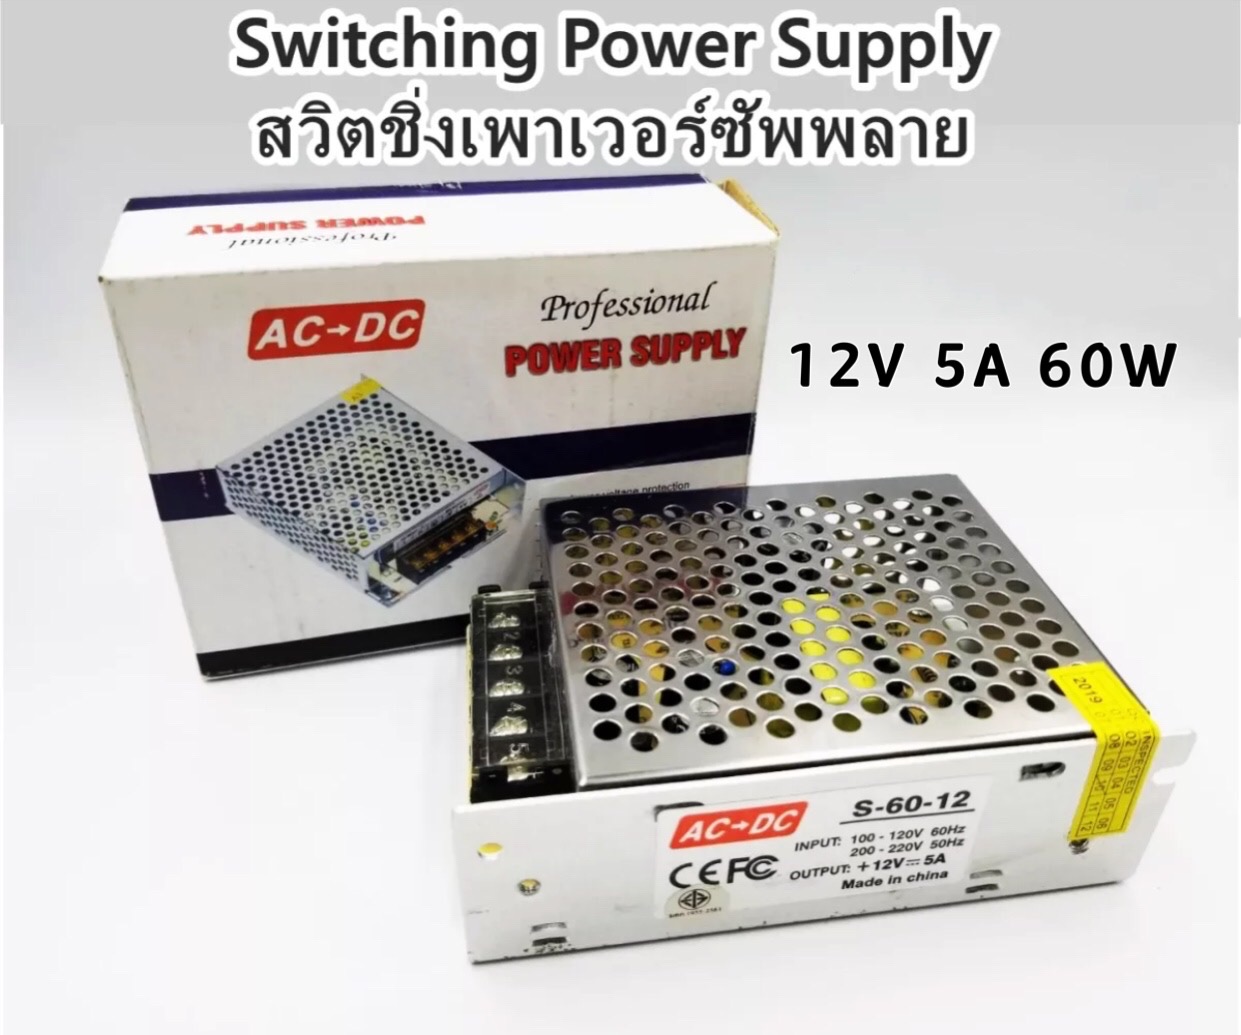 Switching Power Supply สวิตชิ่งเพาเวอร์ซัพพลาย 12V 5A 60W(สีเงิน)